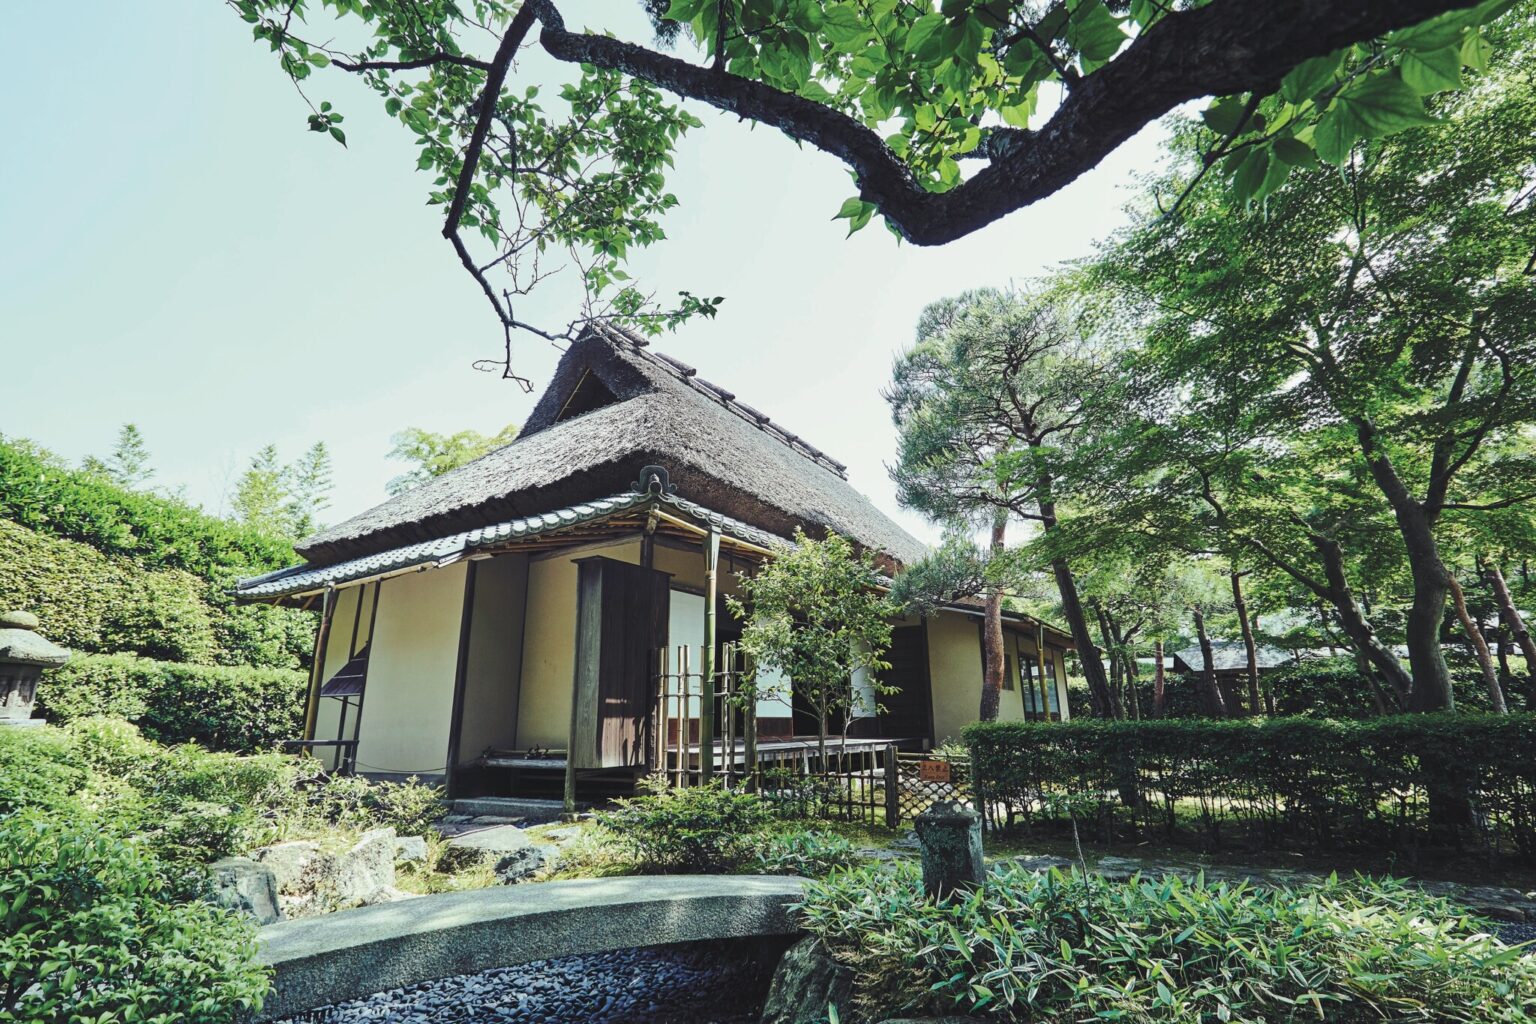 京都から鎌倉へ。朝廷文化が息づく雅な世界を体感できるのは〈一条恵観山荘〉。建築当時の朝廷文化を伝える貴重な遺構として、国の重要文化財に指定。